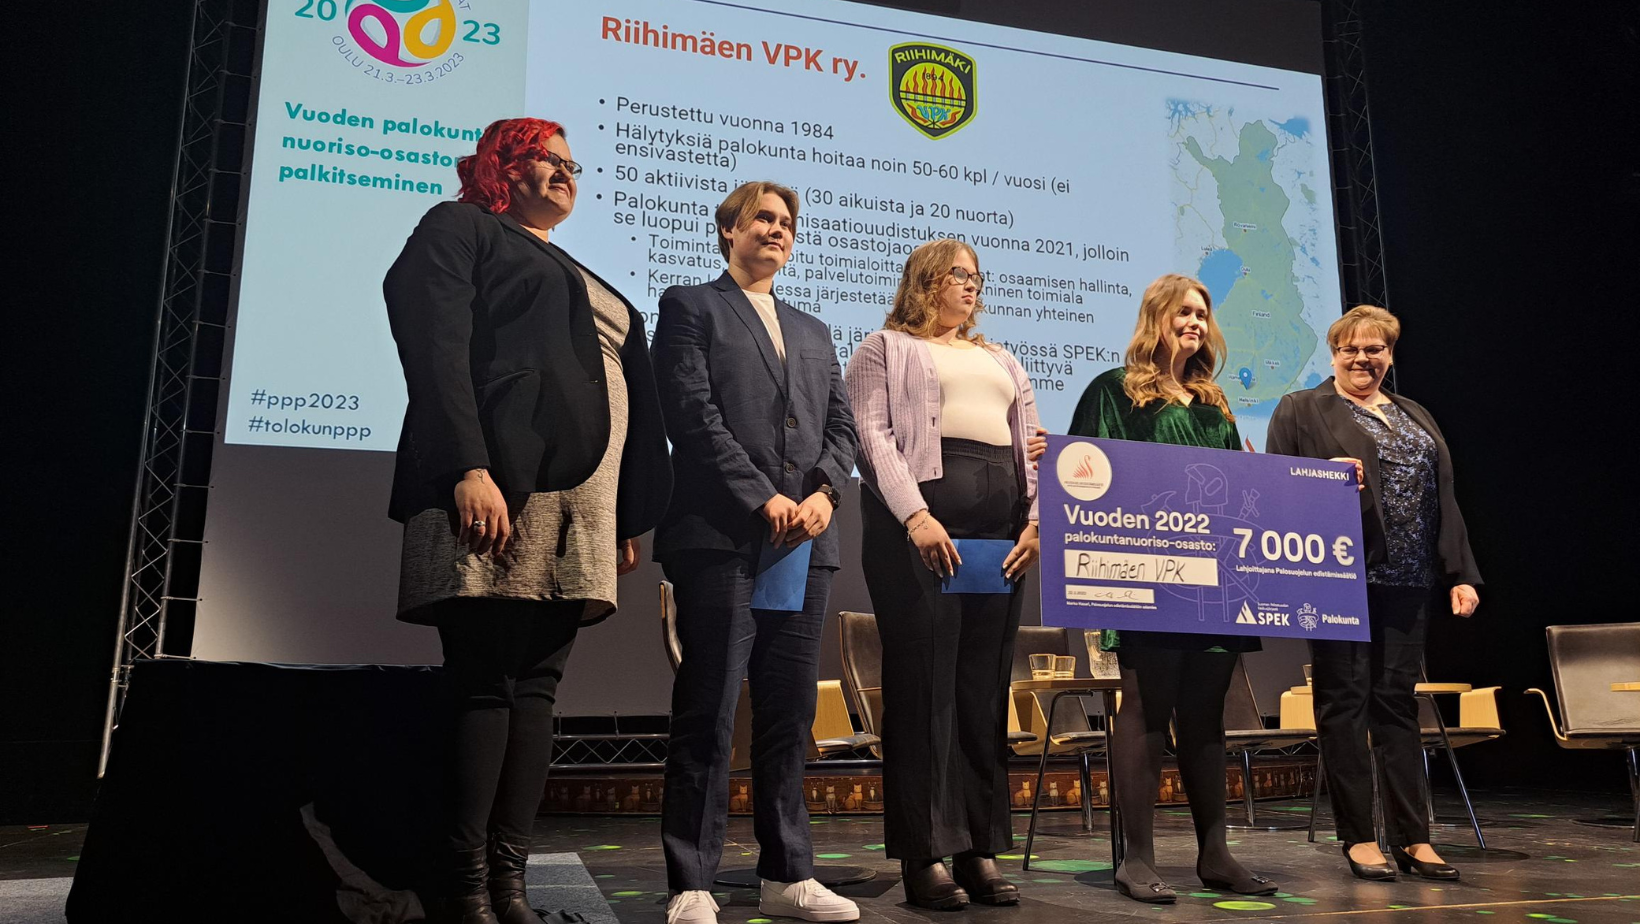 Riihimäen VPK:n palokuntalaiset vastaanottivat palkinnon Palopäällystöpäivillä.